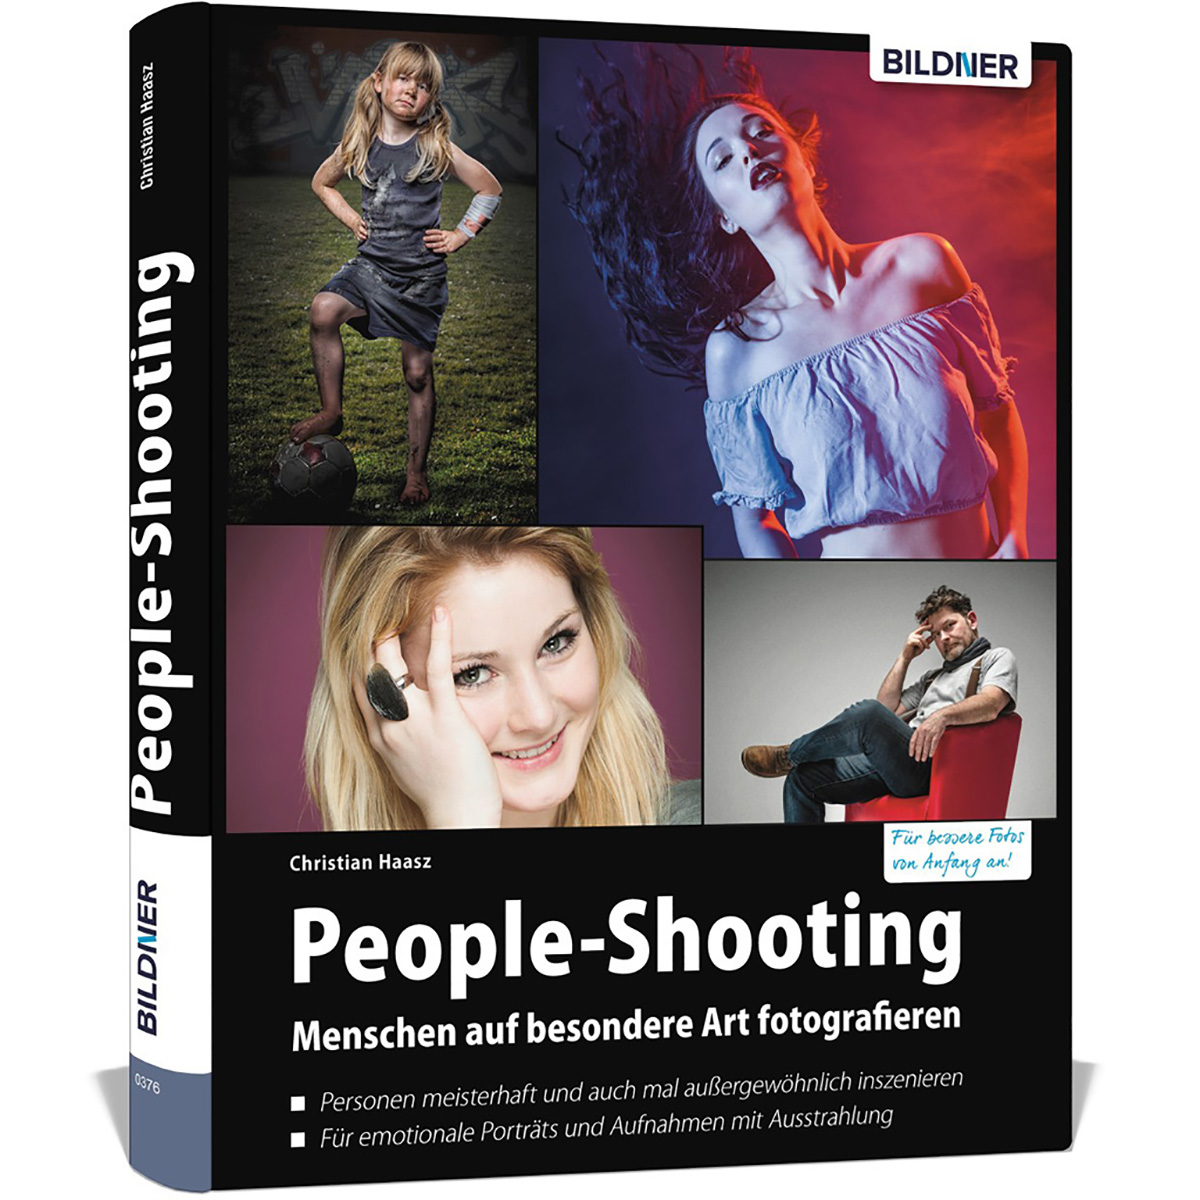 People-Shooting - Menschen besondere fotografieren auf Art